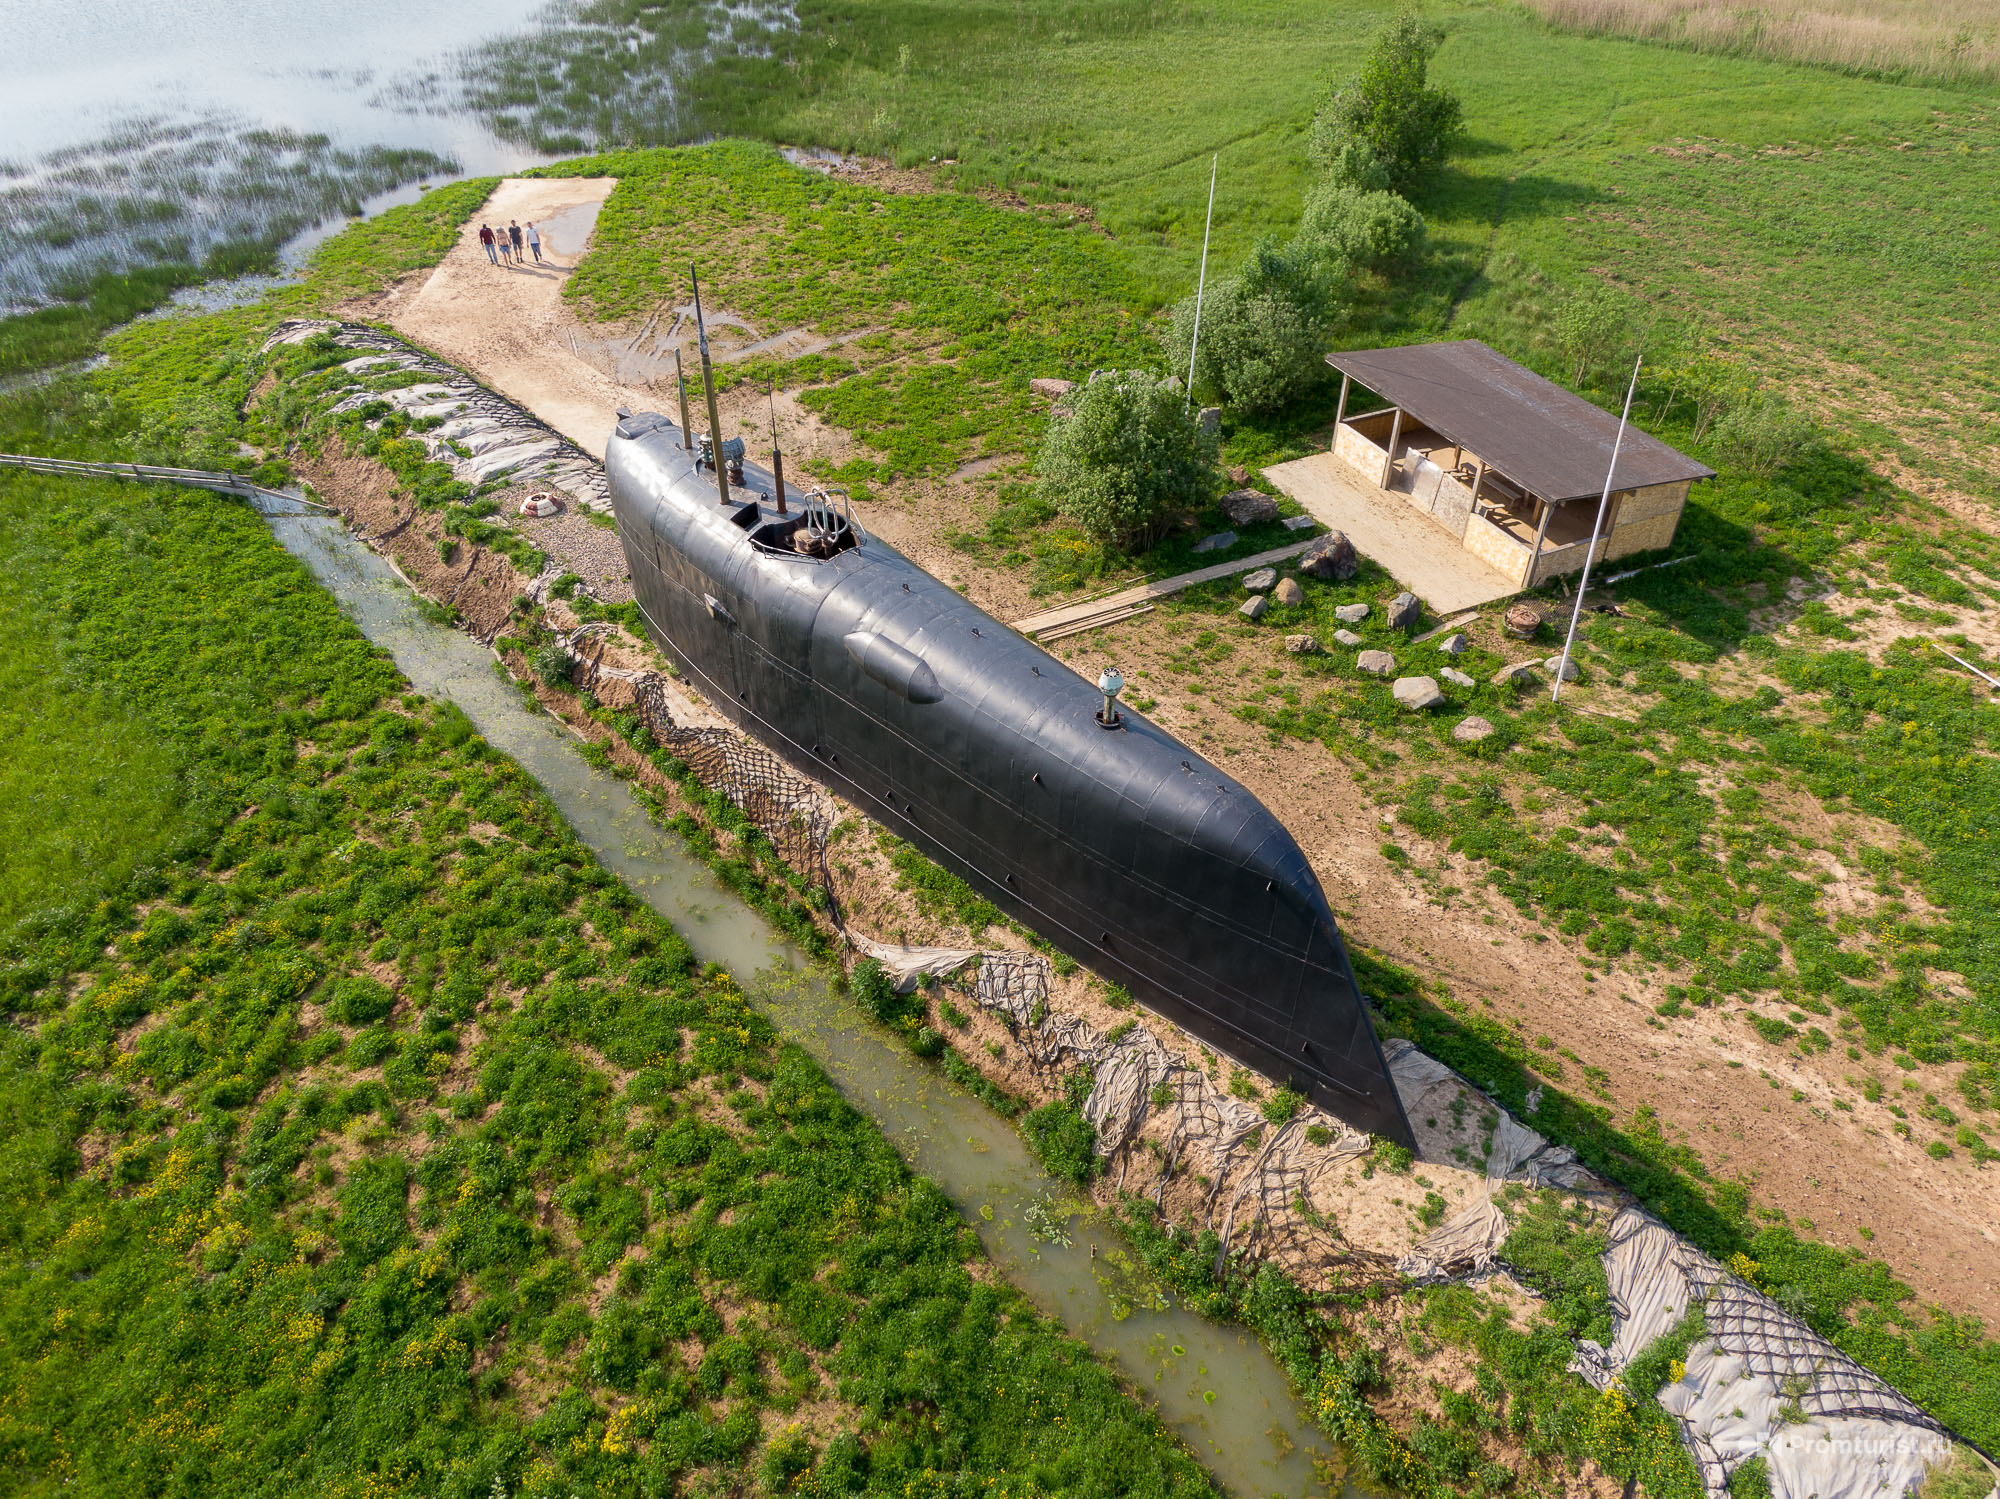 Пл ка. К-19 атомная подводная лодка. Никульская подводная лодка к19. Подводная лодка к-19 в Мытищах. АПЛ К 19 подводная лодка.